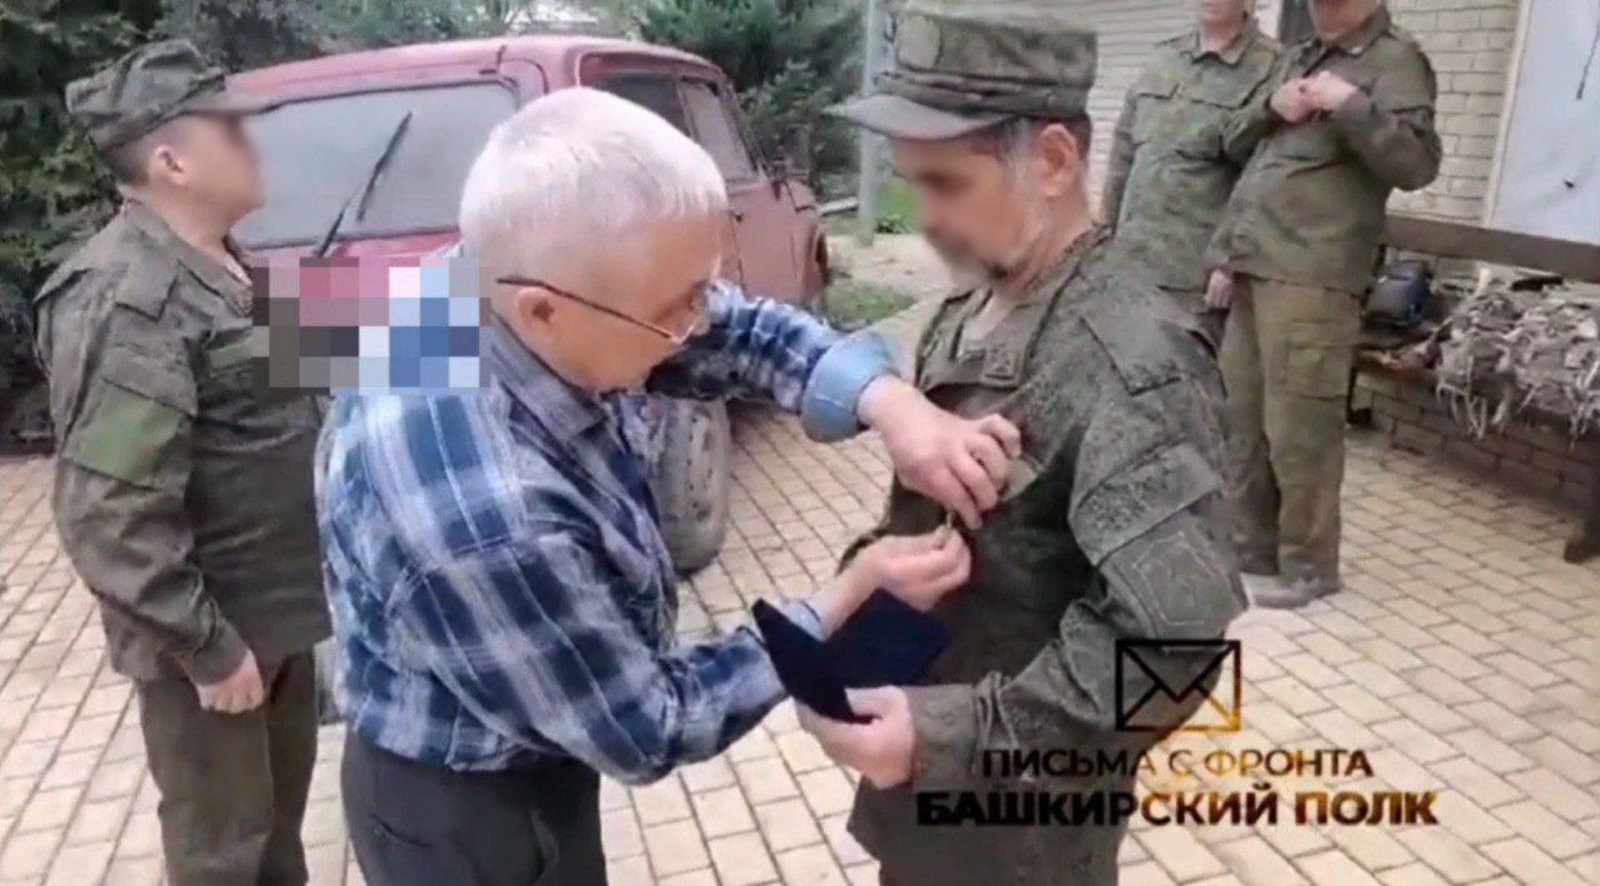 Бойцов из Башкирии гаубичного артдивизиона наградили за освобождение Авдеевки